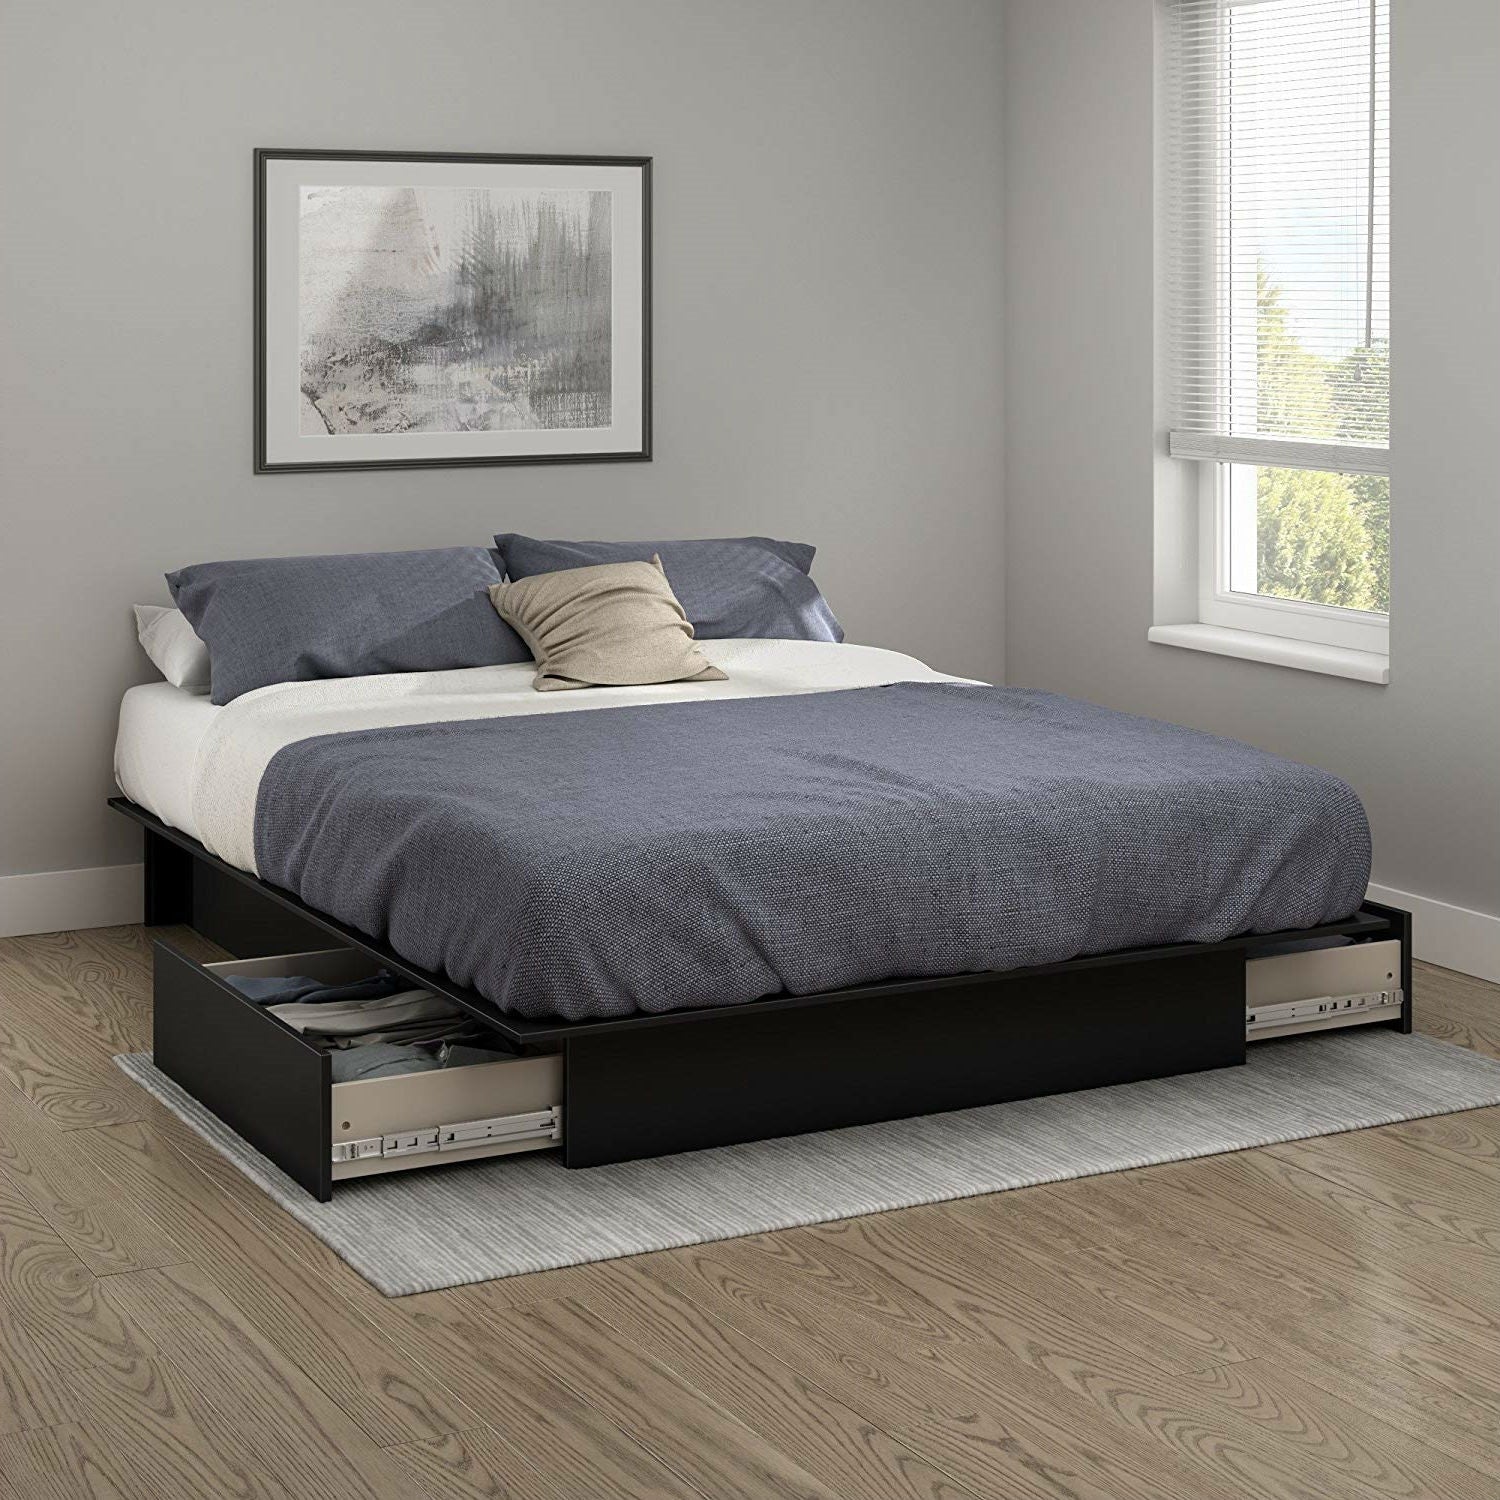 Bedroom > Bed Frames > Platform Beds - Queen Platform Bed Frame With 2 Storage Drawers In Black Wood Finish